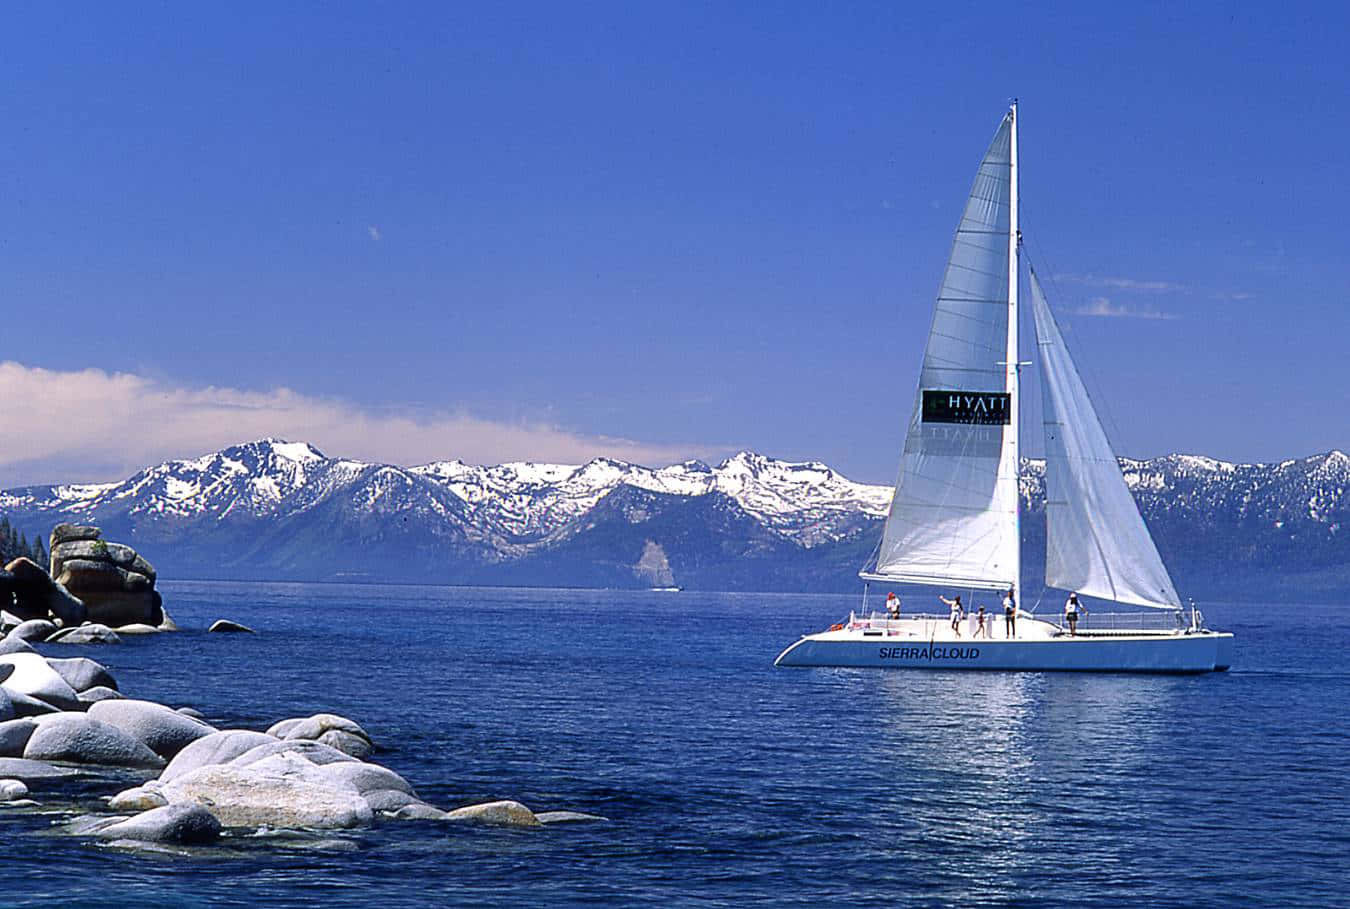 Indånd den friske luft, mens du tager en dejlig bådtur på det solplettede sø.